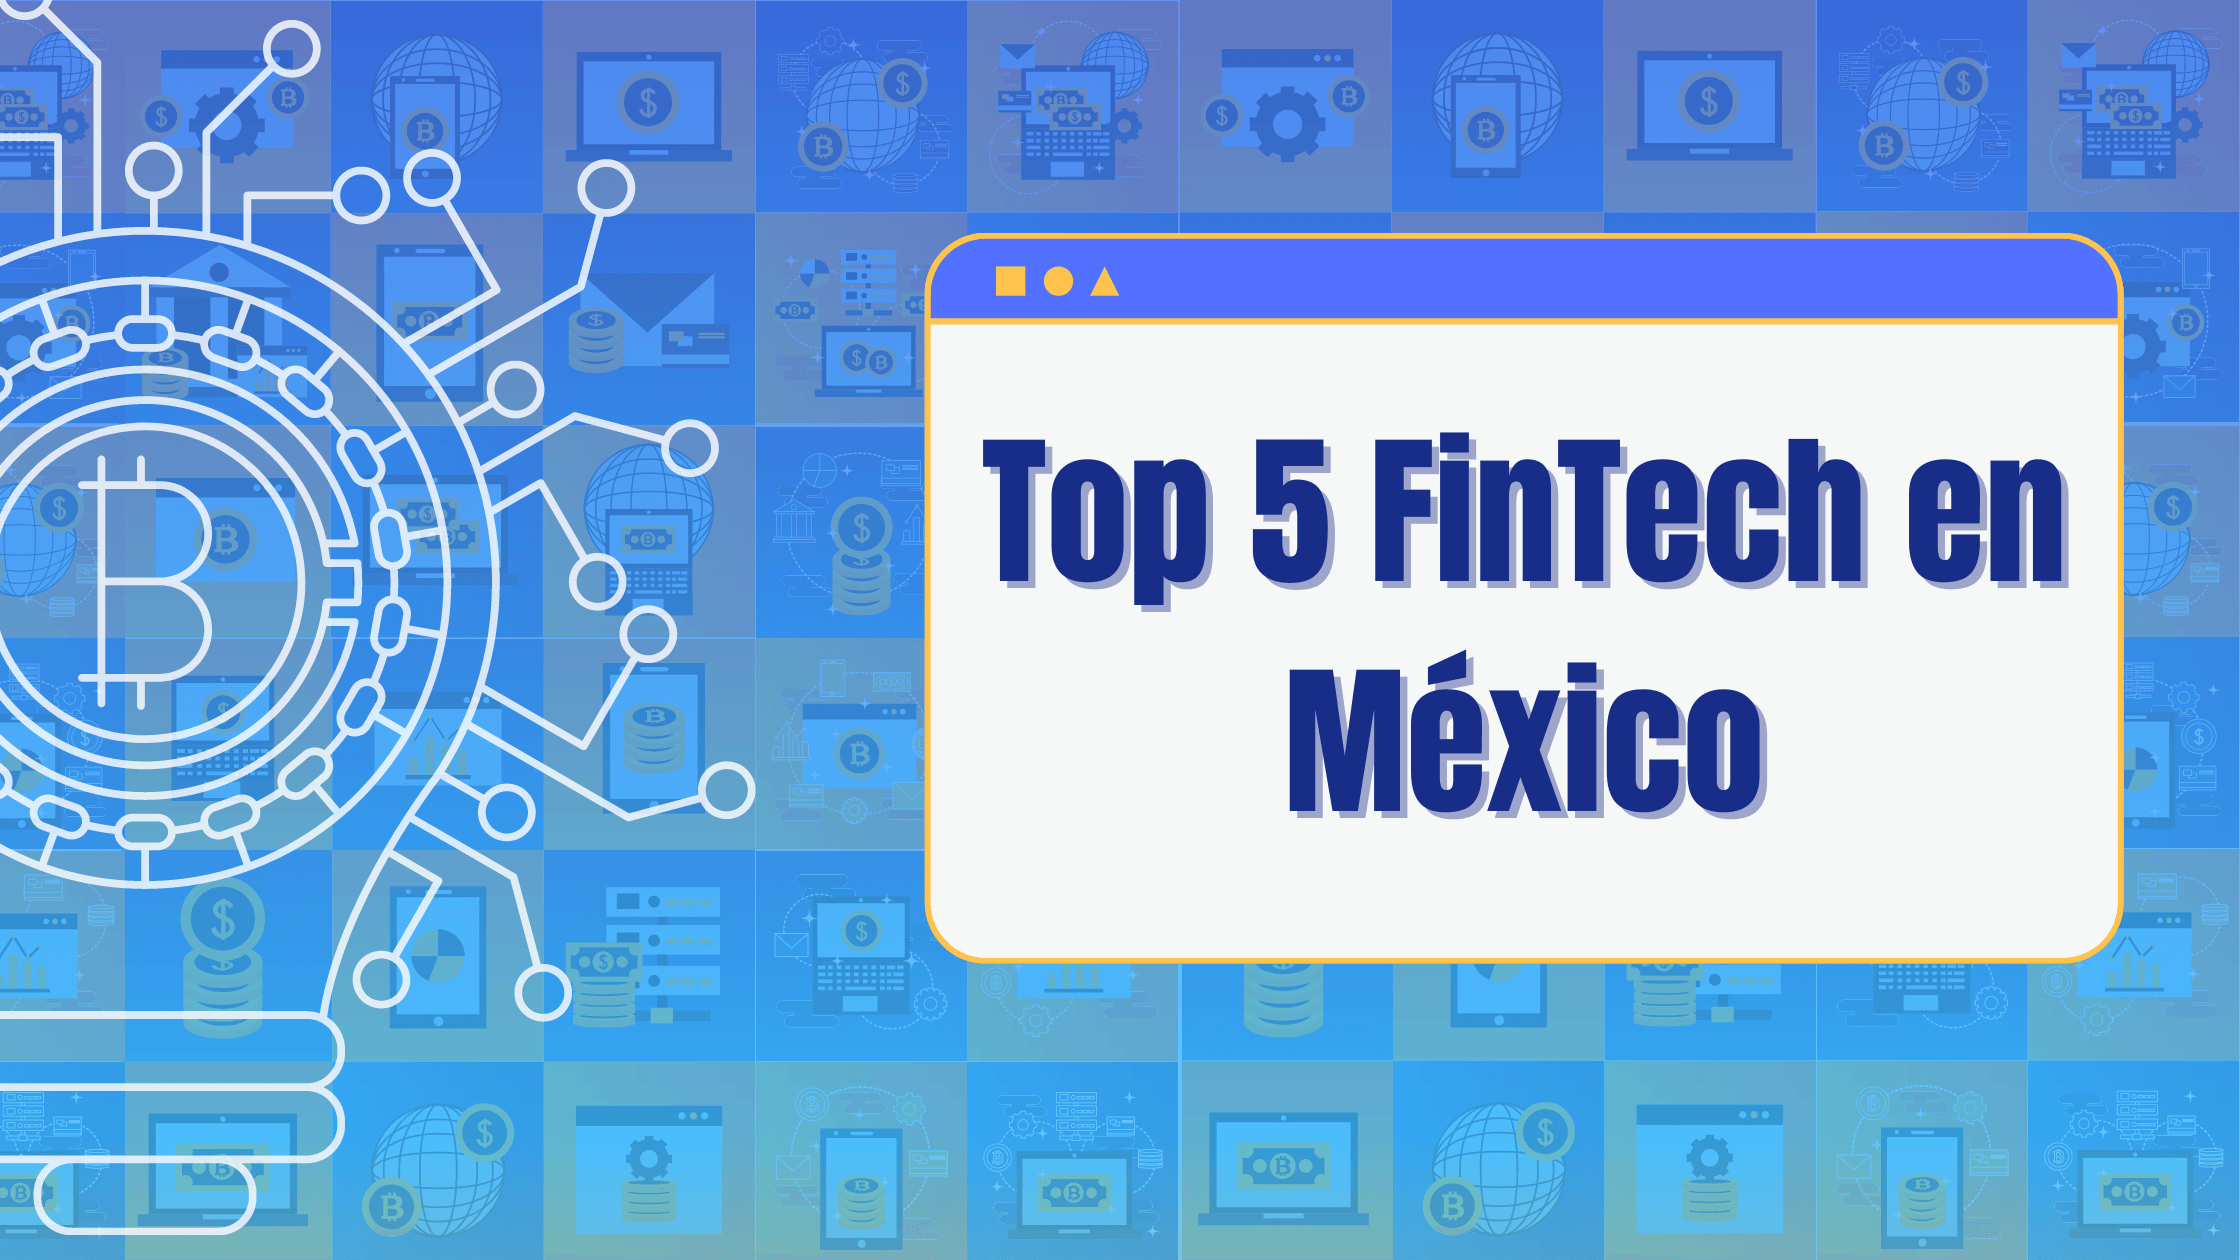 Top 5 FinTech en México Leadsales